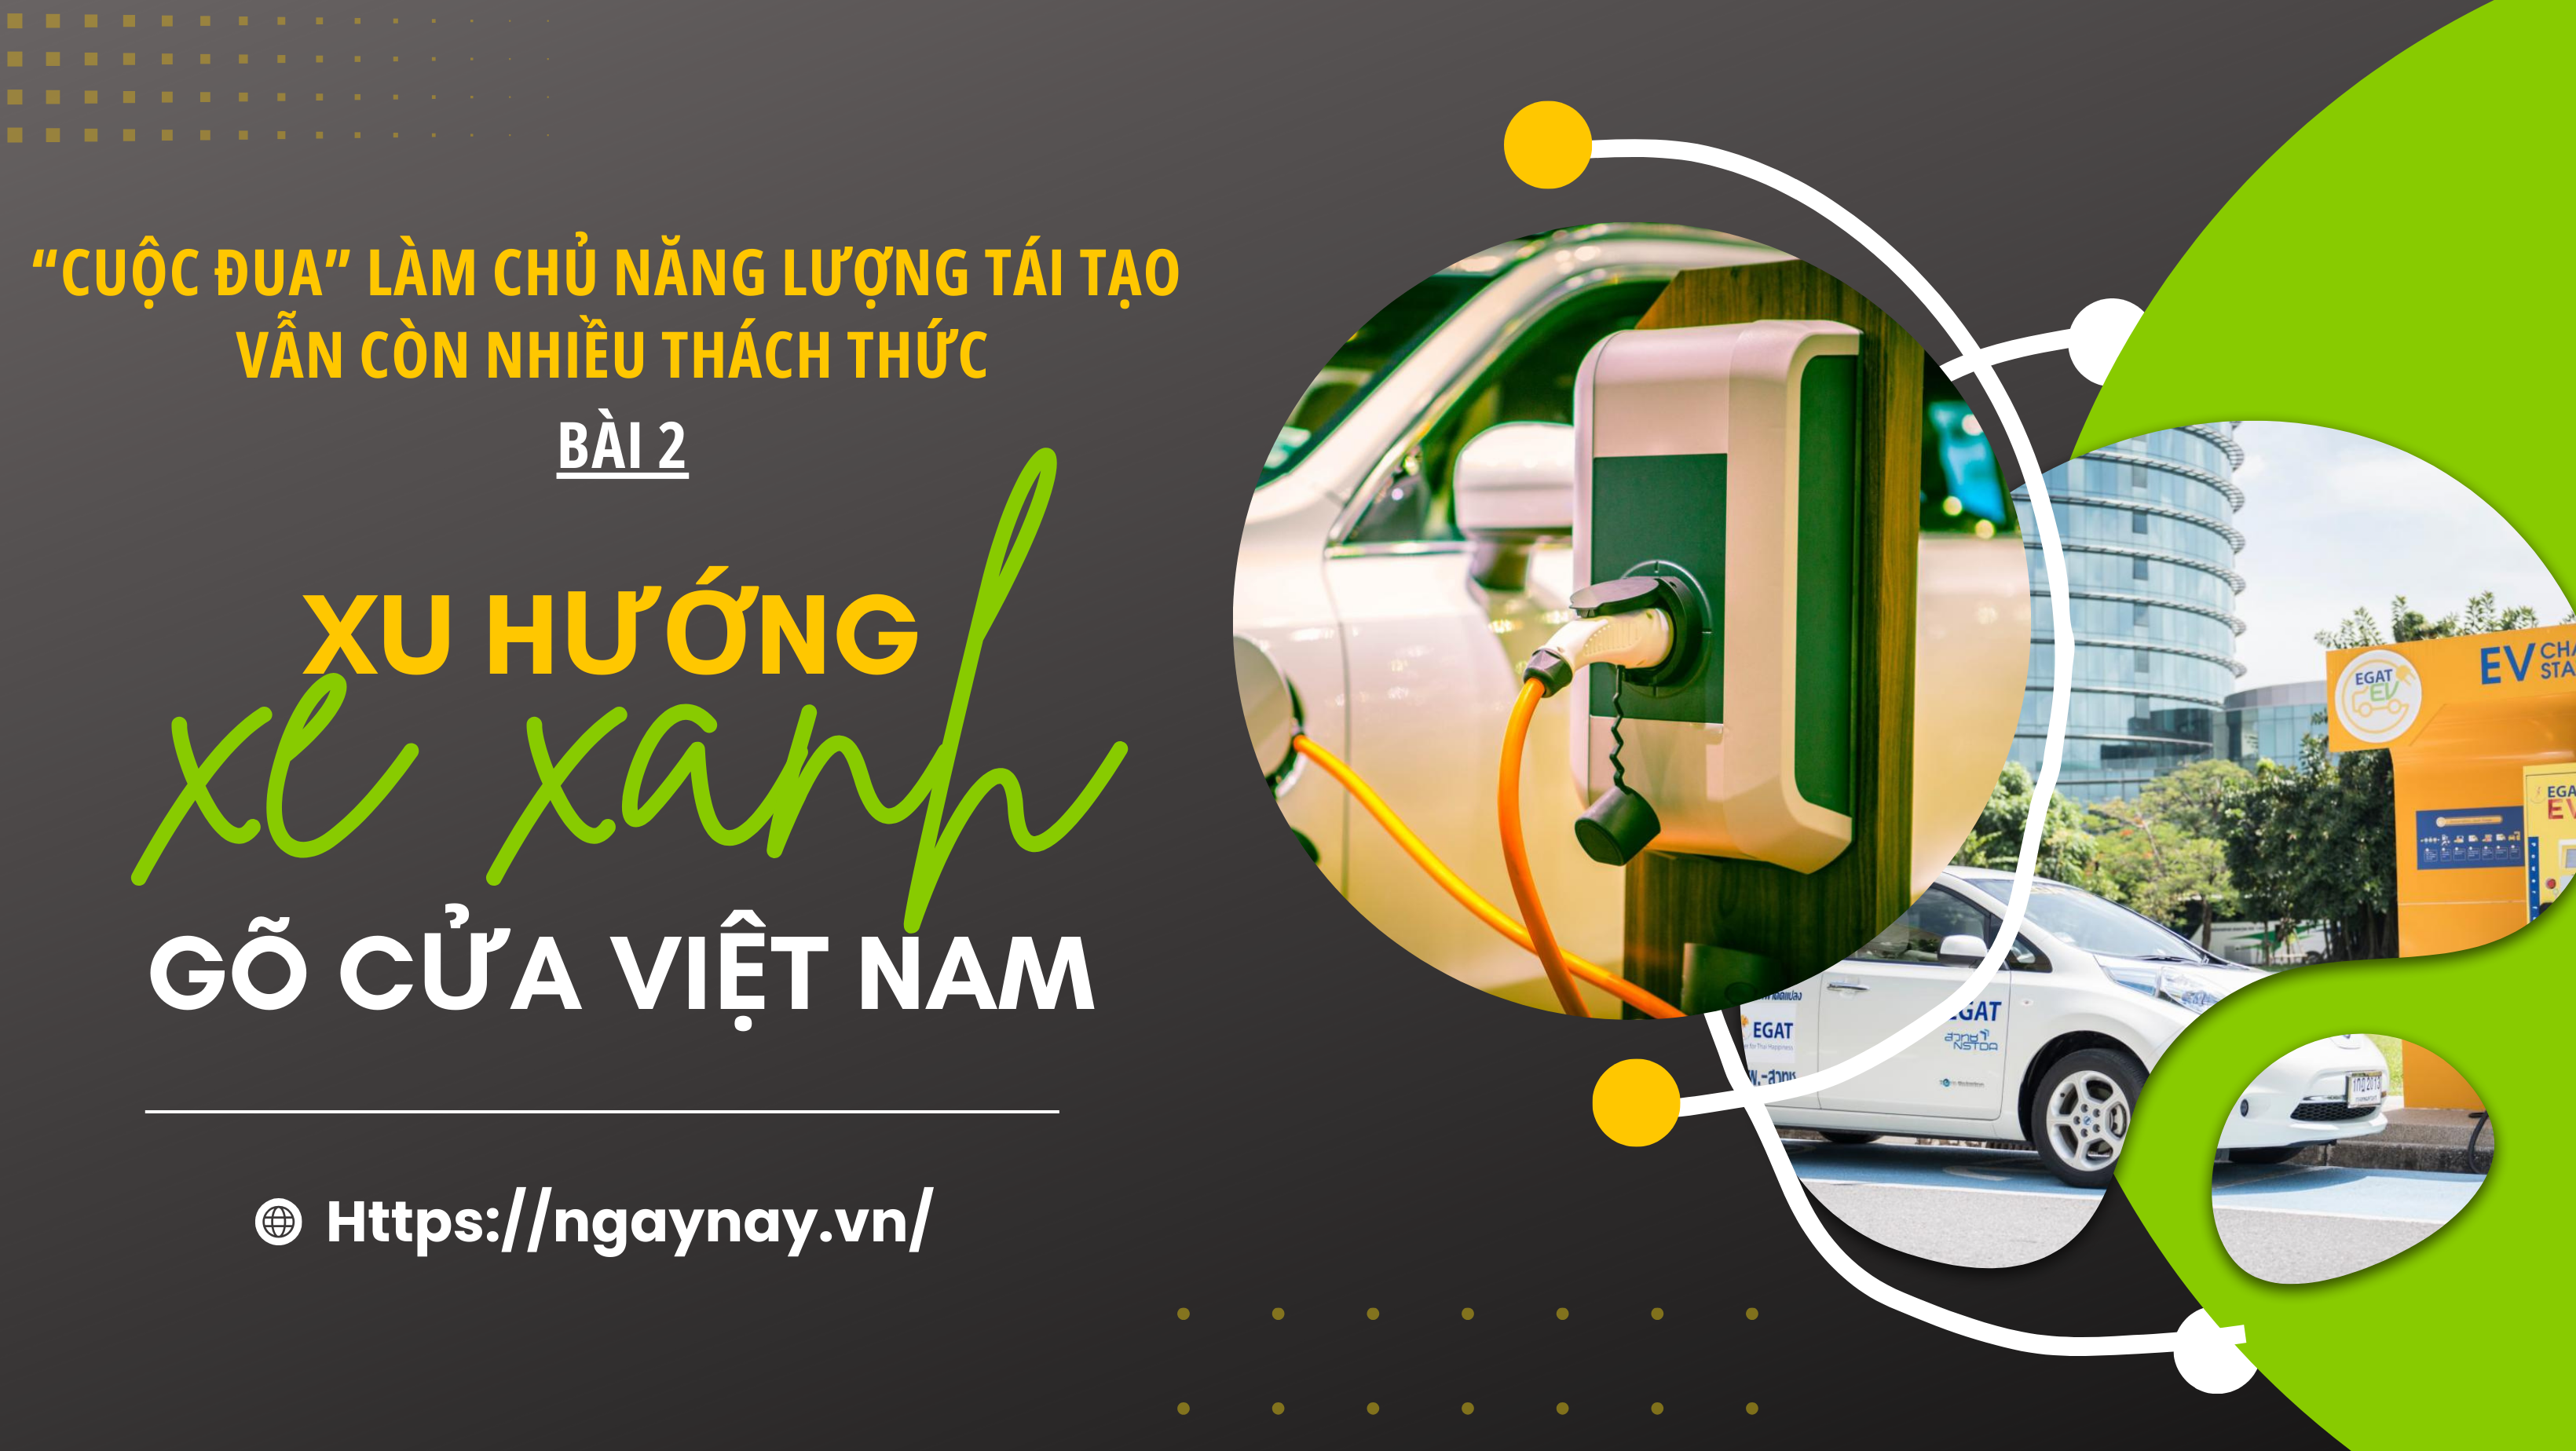 “Cuộc đua” làm chủ năng lượng tái tạo vẫn còn nhiều thách thức - Bài 2: Xu hướng 'xe xanh' Việt Nam